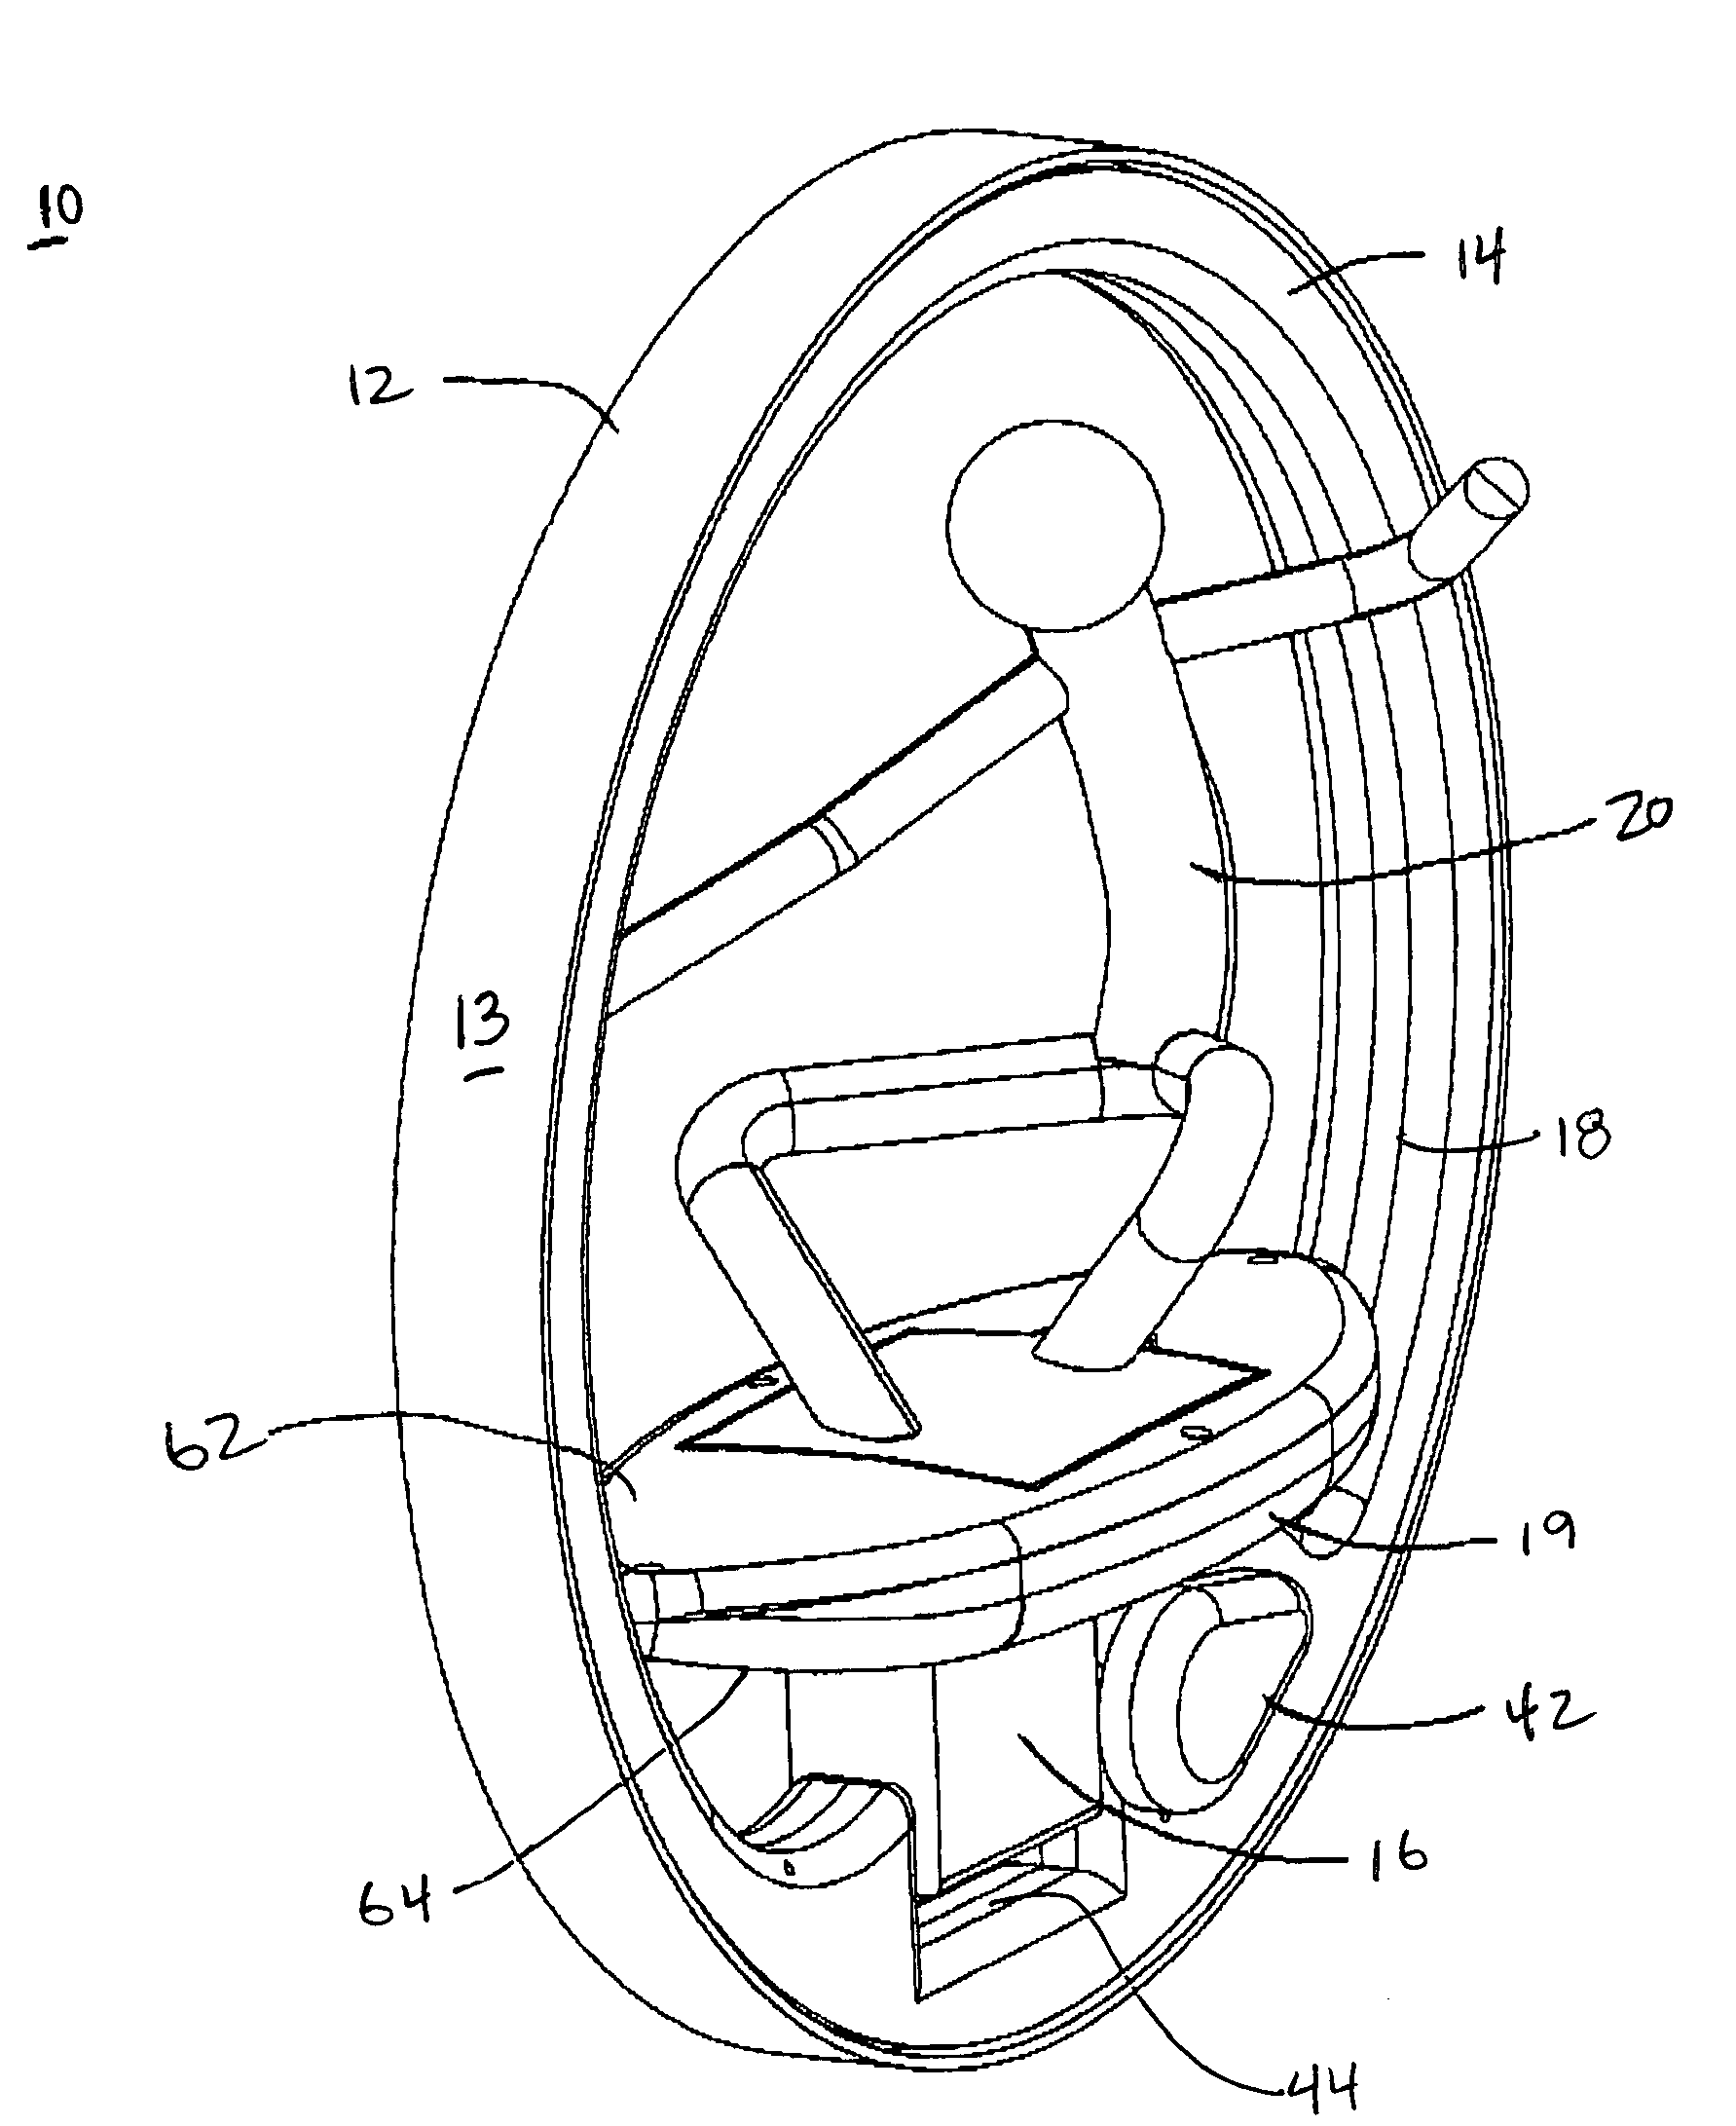 Mono-wheel vehicle with tilt mechanism